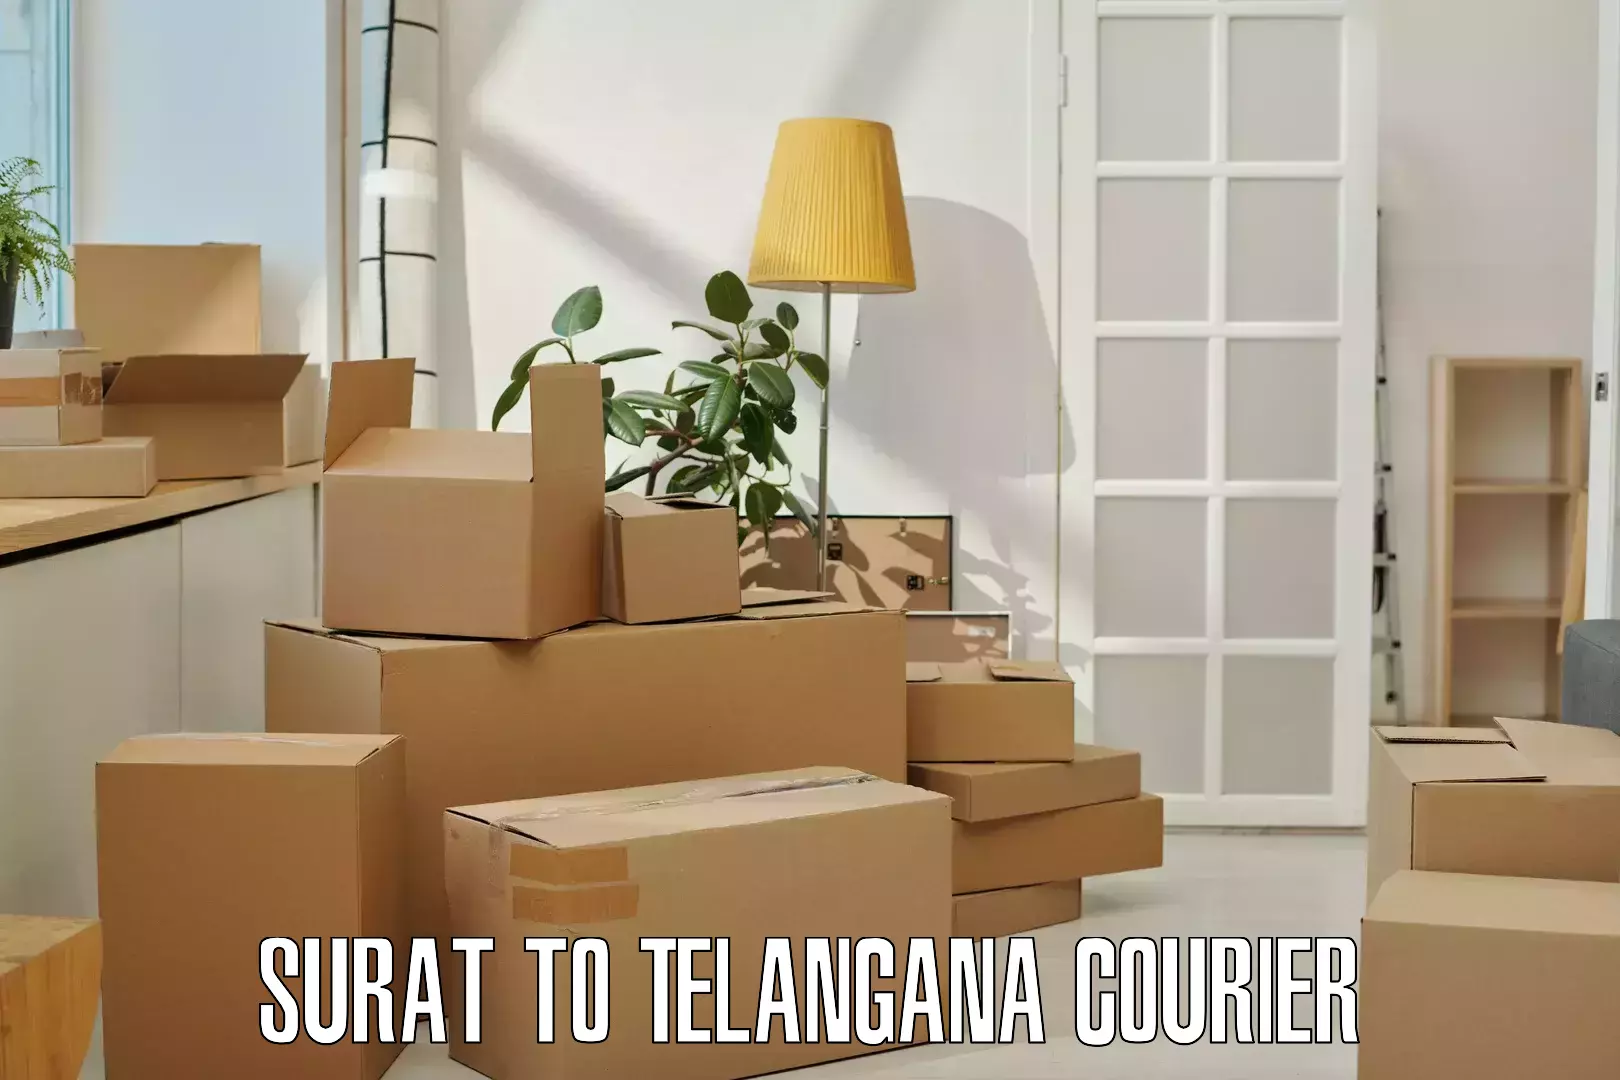 Package delivery network Surat to Ghatkesar